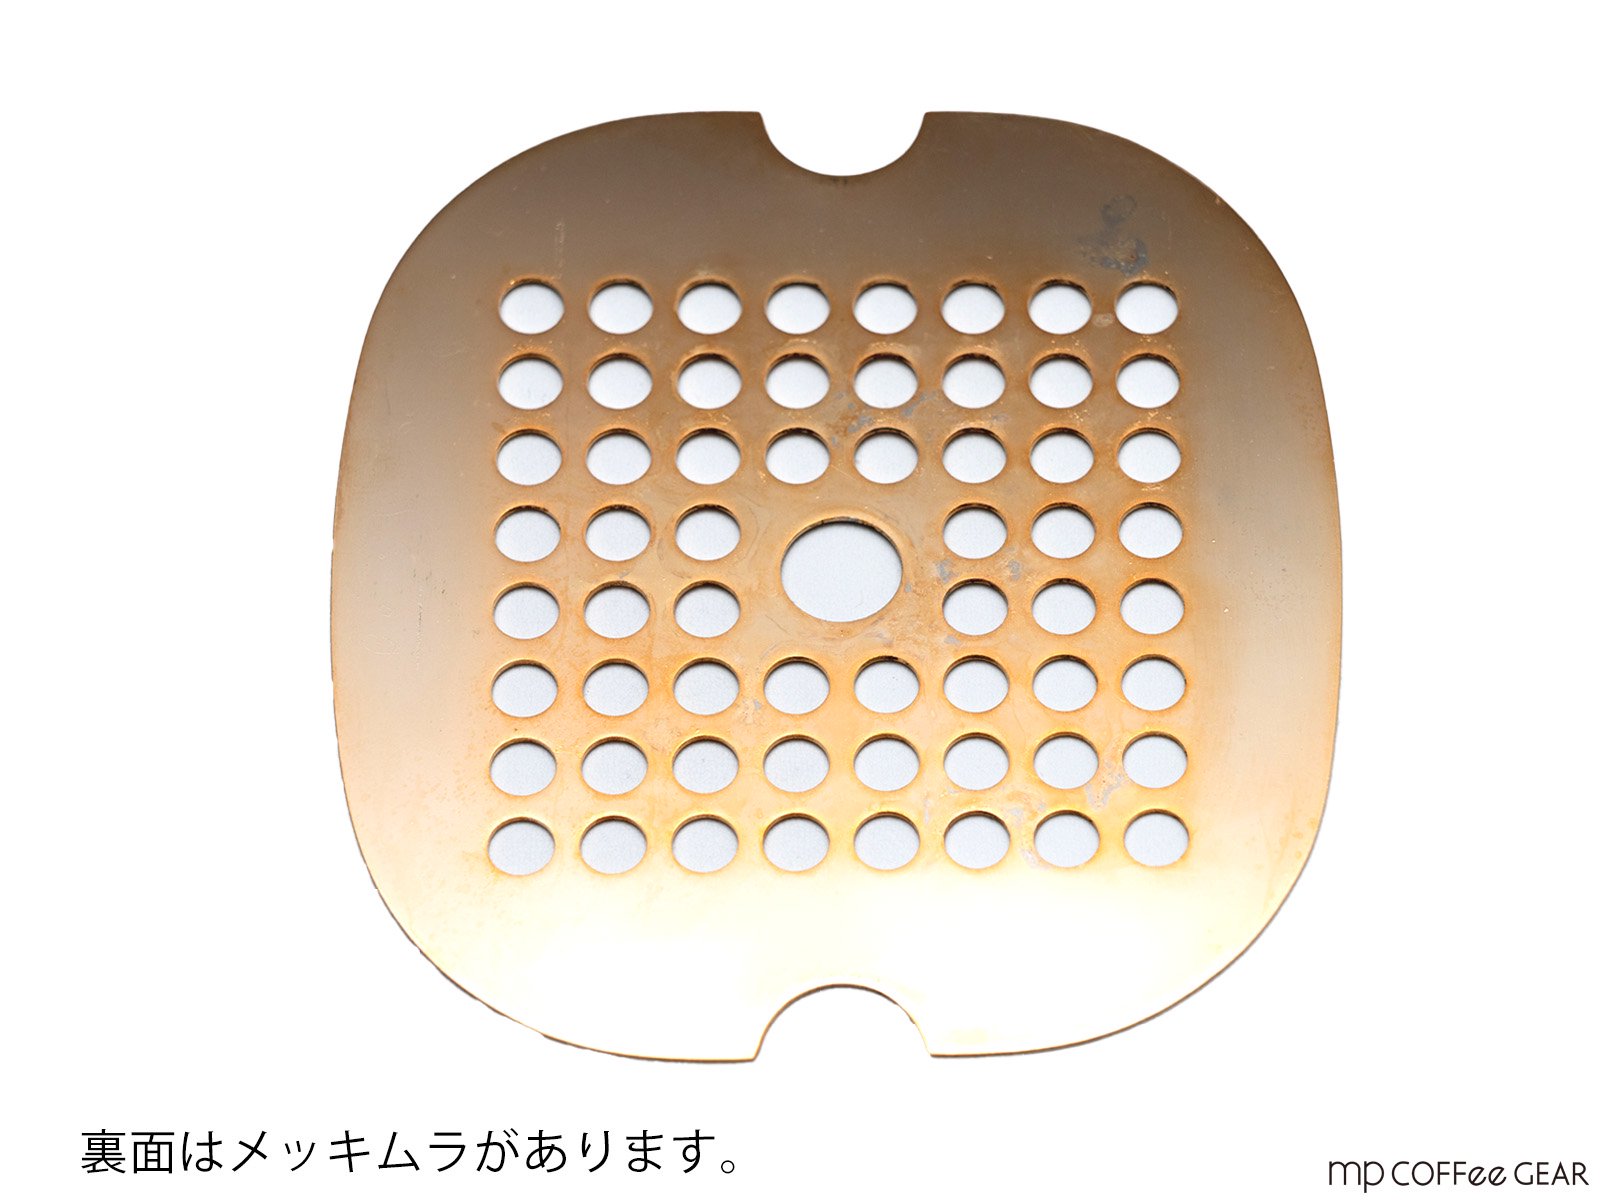 mp coffee gear La Pavoni 専用ステンレス製グリッドプレート【GOLD(24金メッキ)】